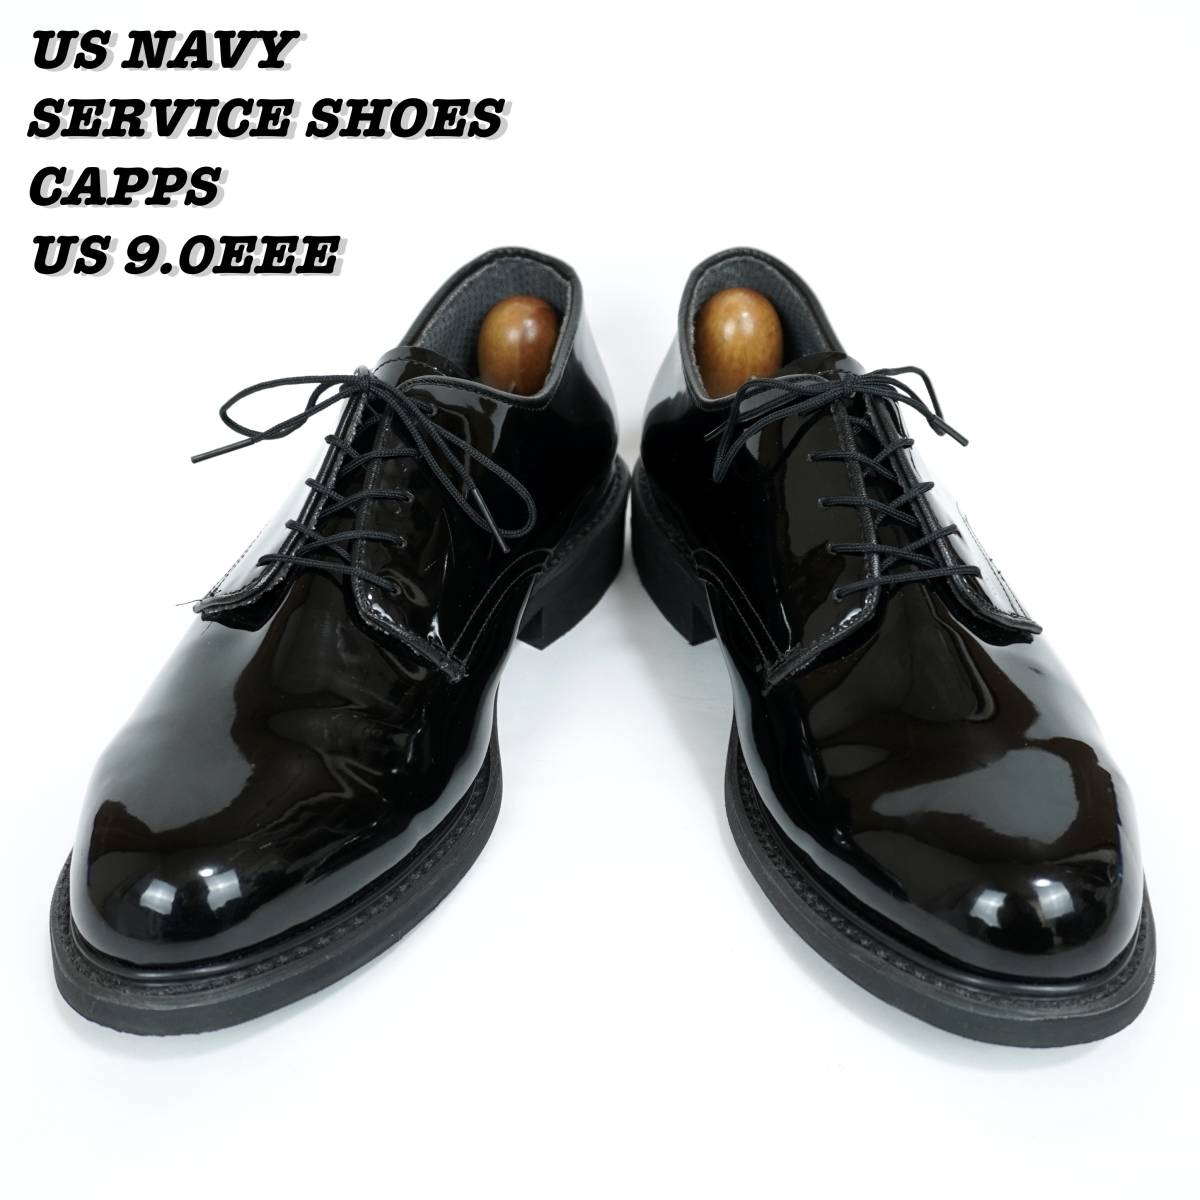 US NAVY SERVICE SHOES CAPPS 2000s US9.0EEE アメリカ海軍 サービスシューズ ドレスシューズ 革靴 式典